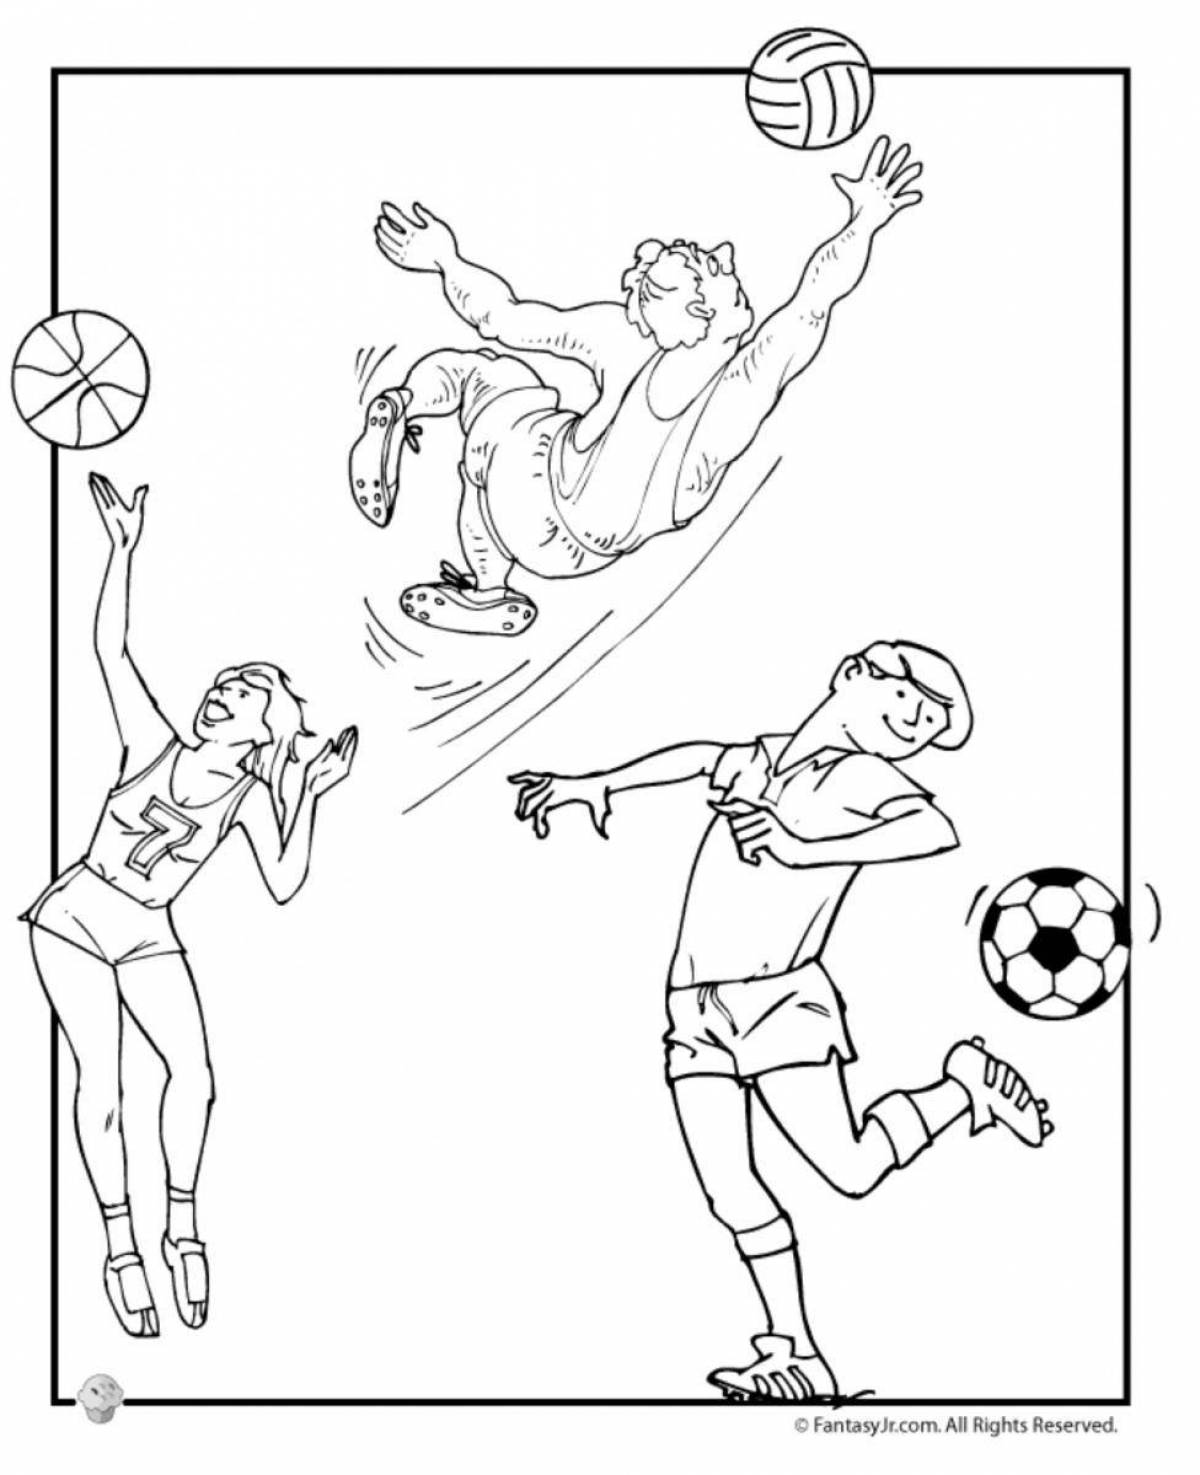 Раскраска для детей волейбол и баскетбол